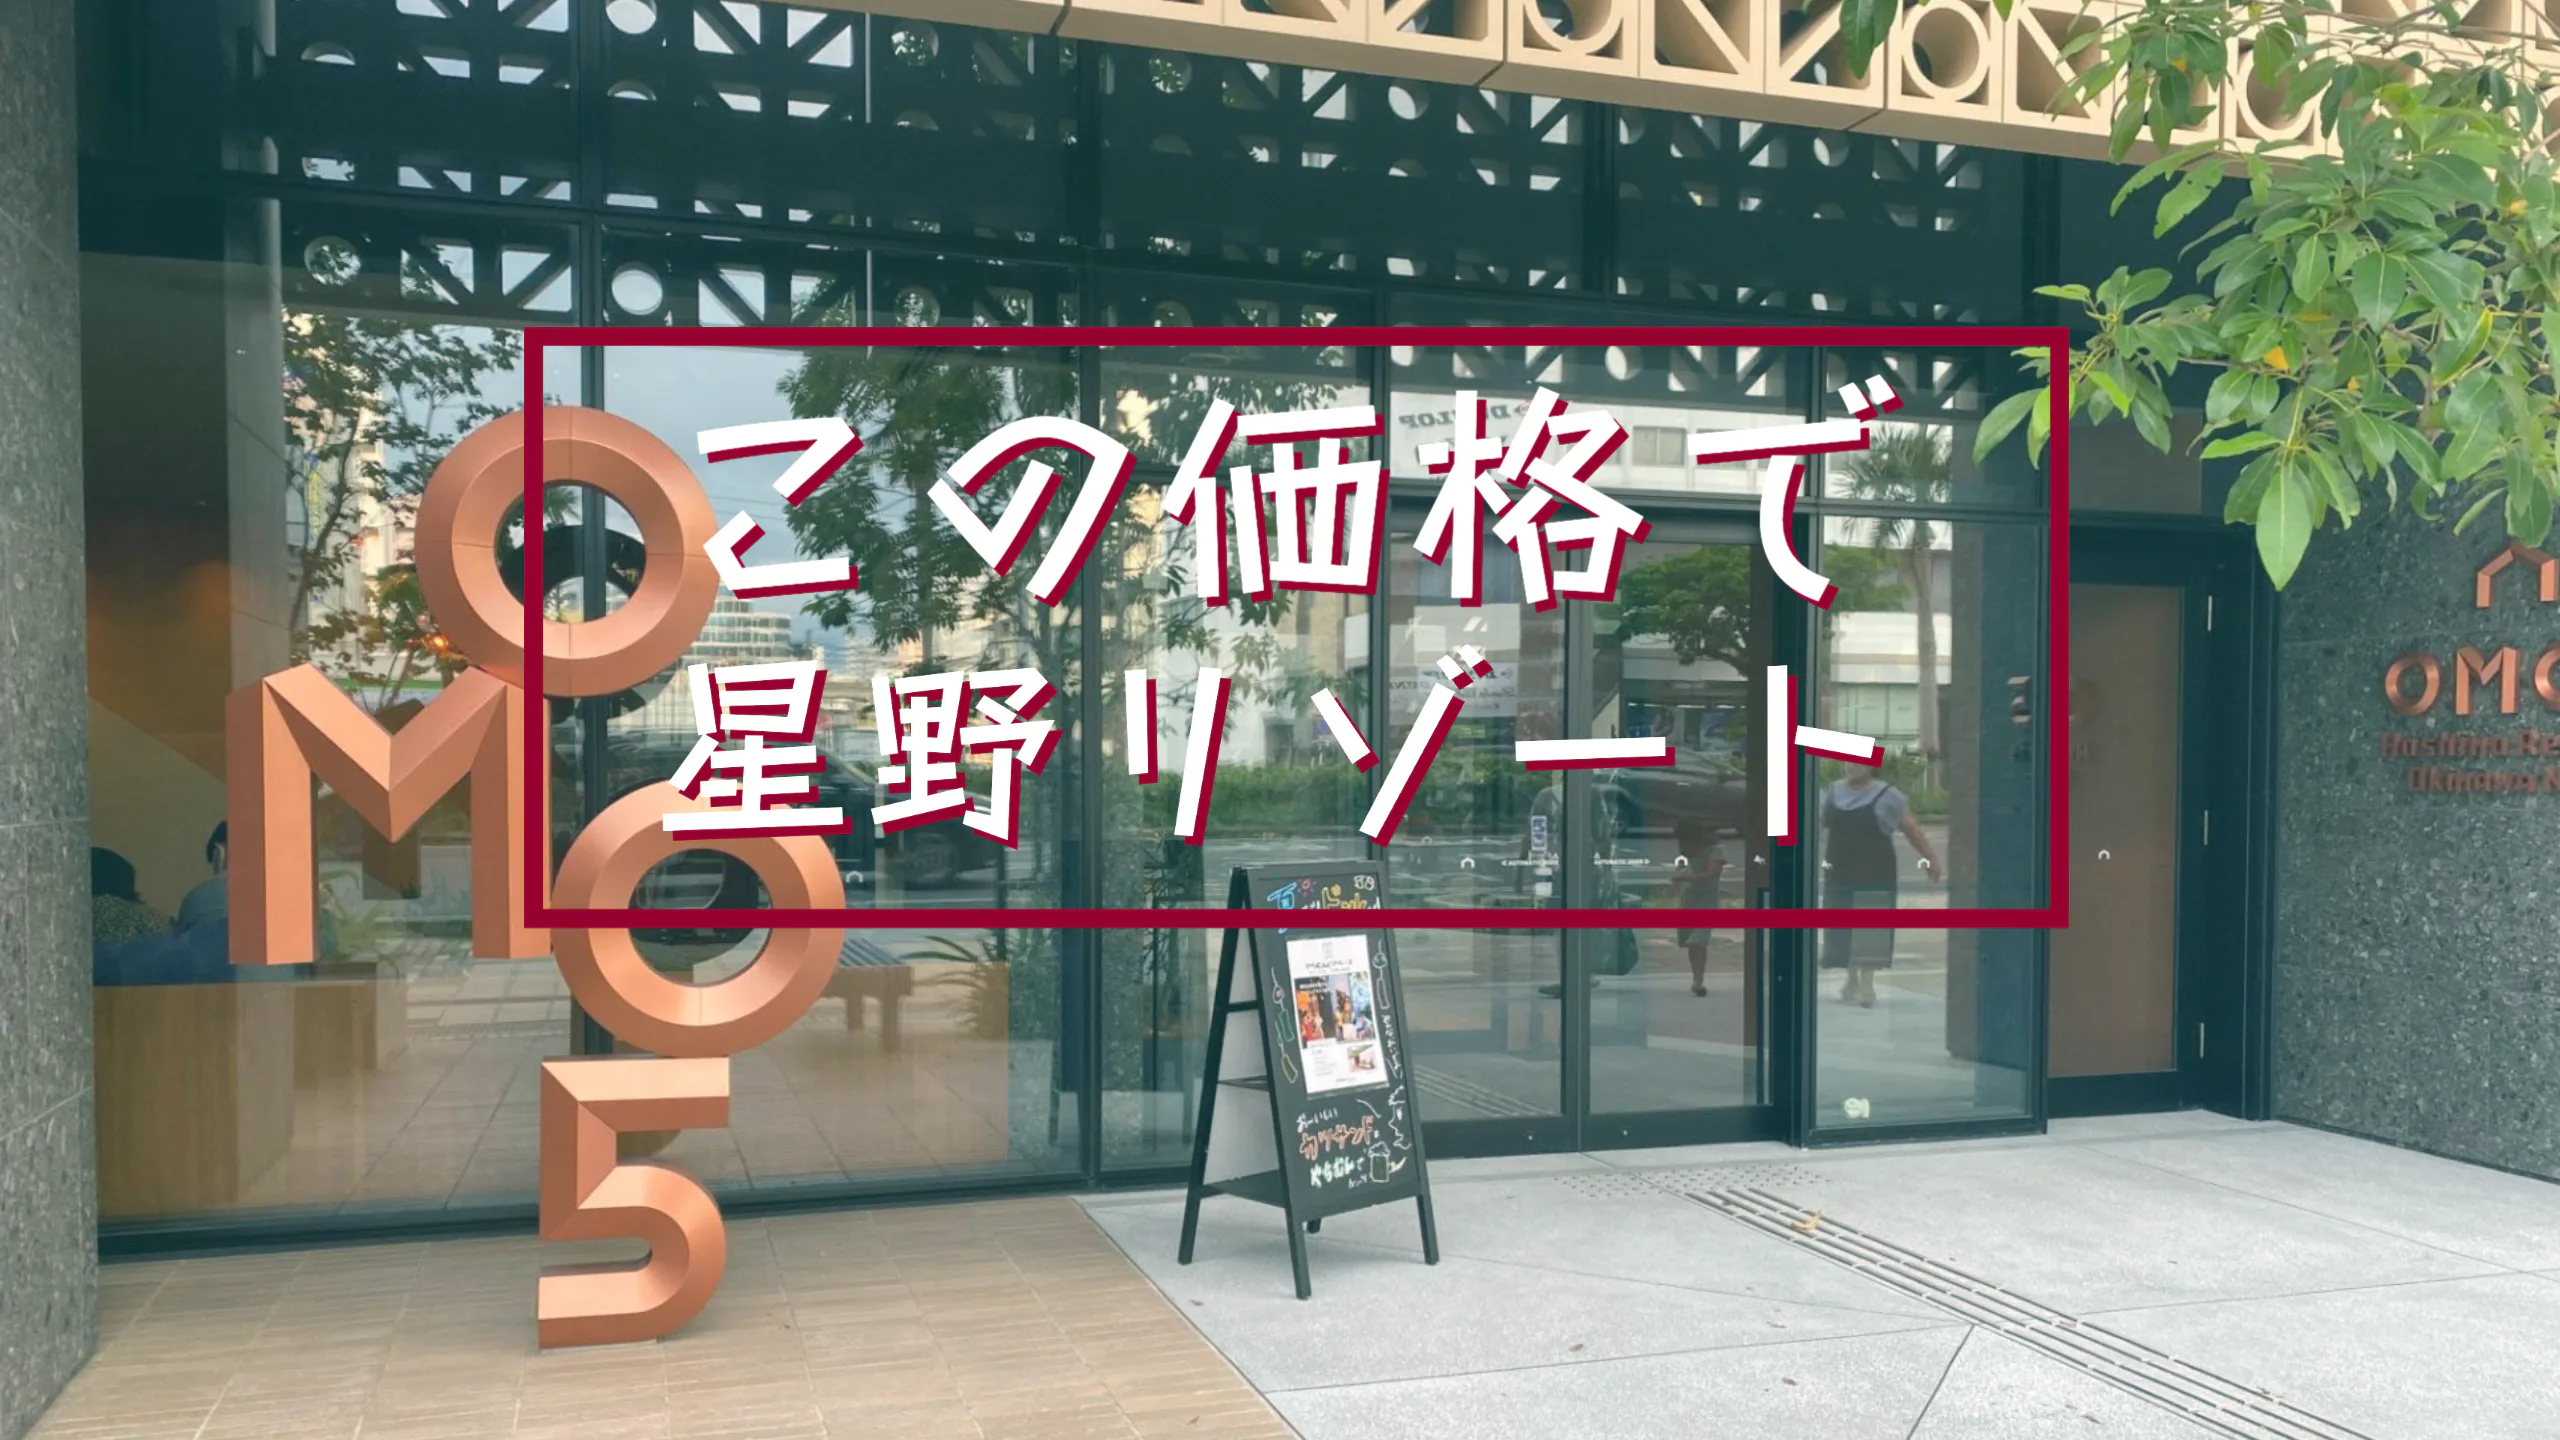 [일본][오키나와] 새로 오픈한 호시노 리조트 OMO5에 숙박!